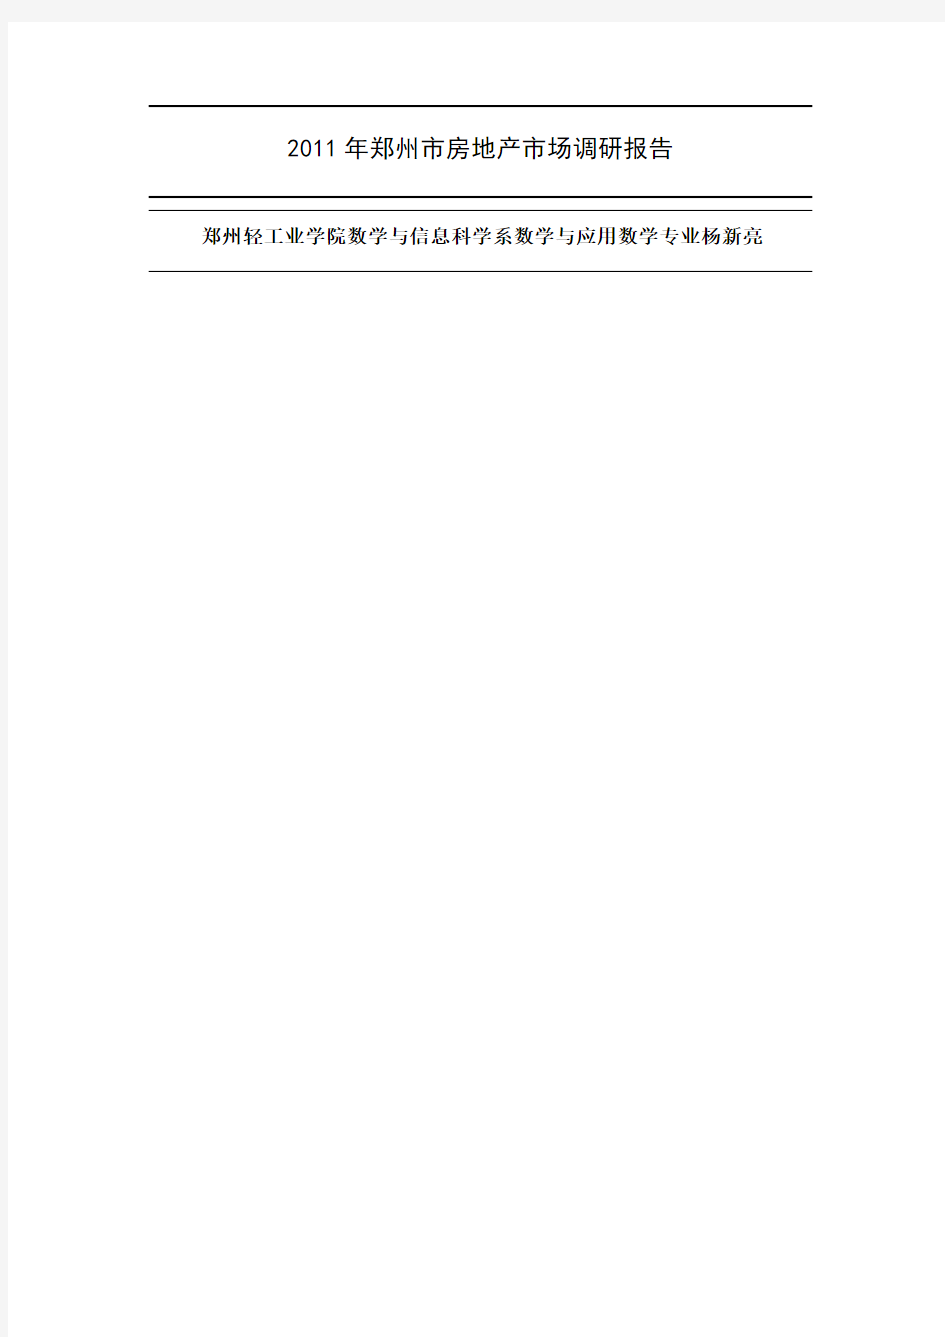 2019年郑州市房地产消费者需求调查报告共29页